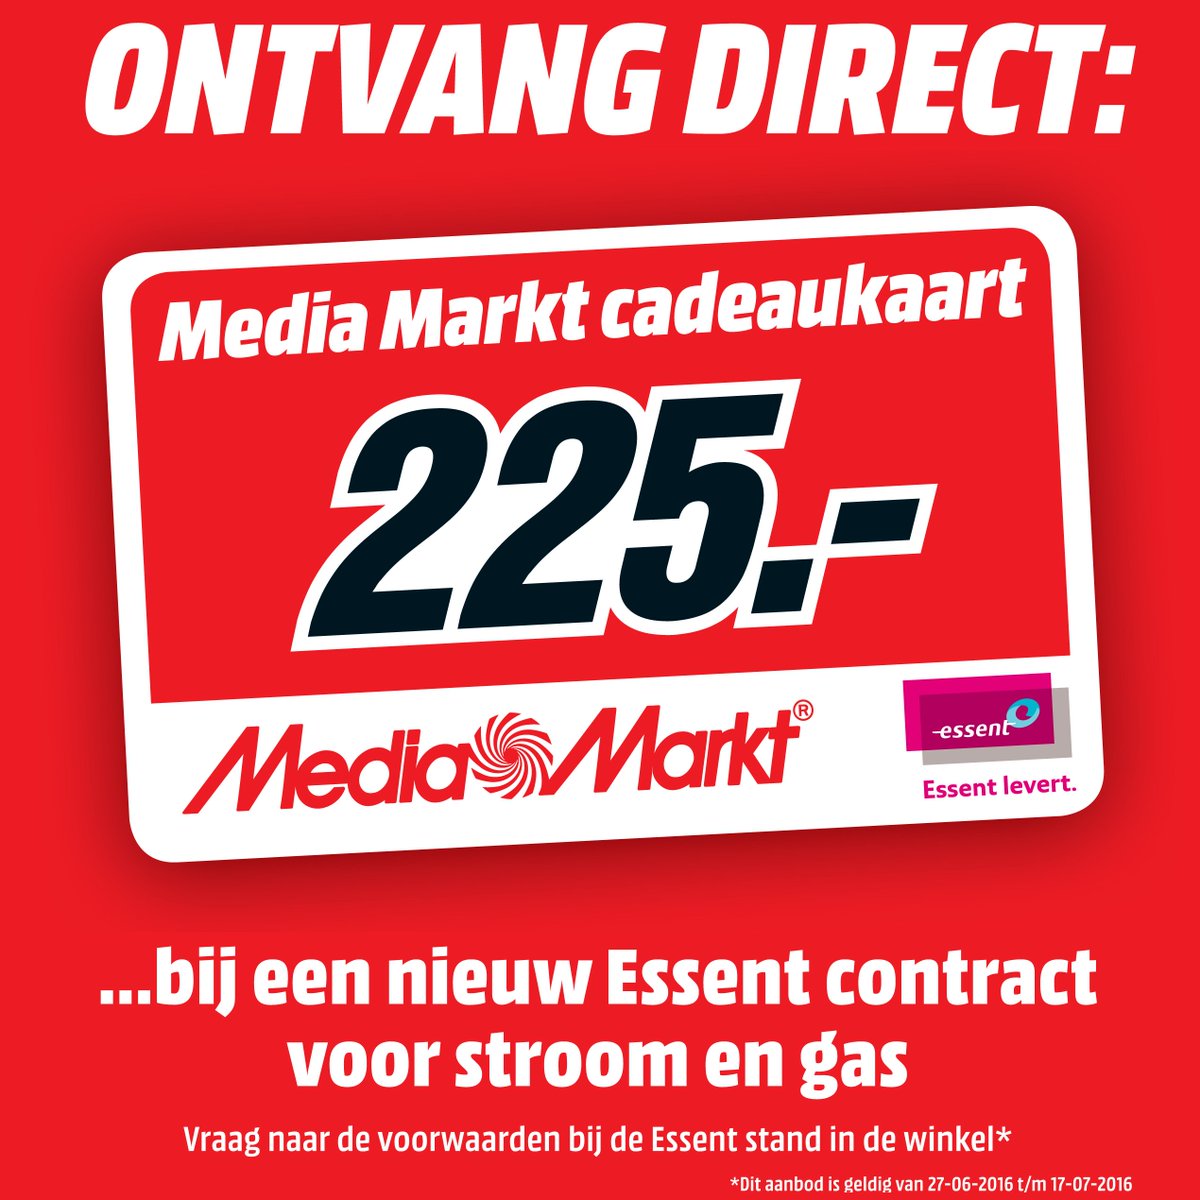 Media Markt Rijswijk Twitter: "Ontvang een #MediaMarkt #cadeaukaart bij een nieuw #Essent contract voor stroom en gas! #MediaMarktRW https://t.co/amrogA2k5m" / Twitter